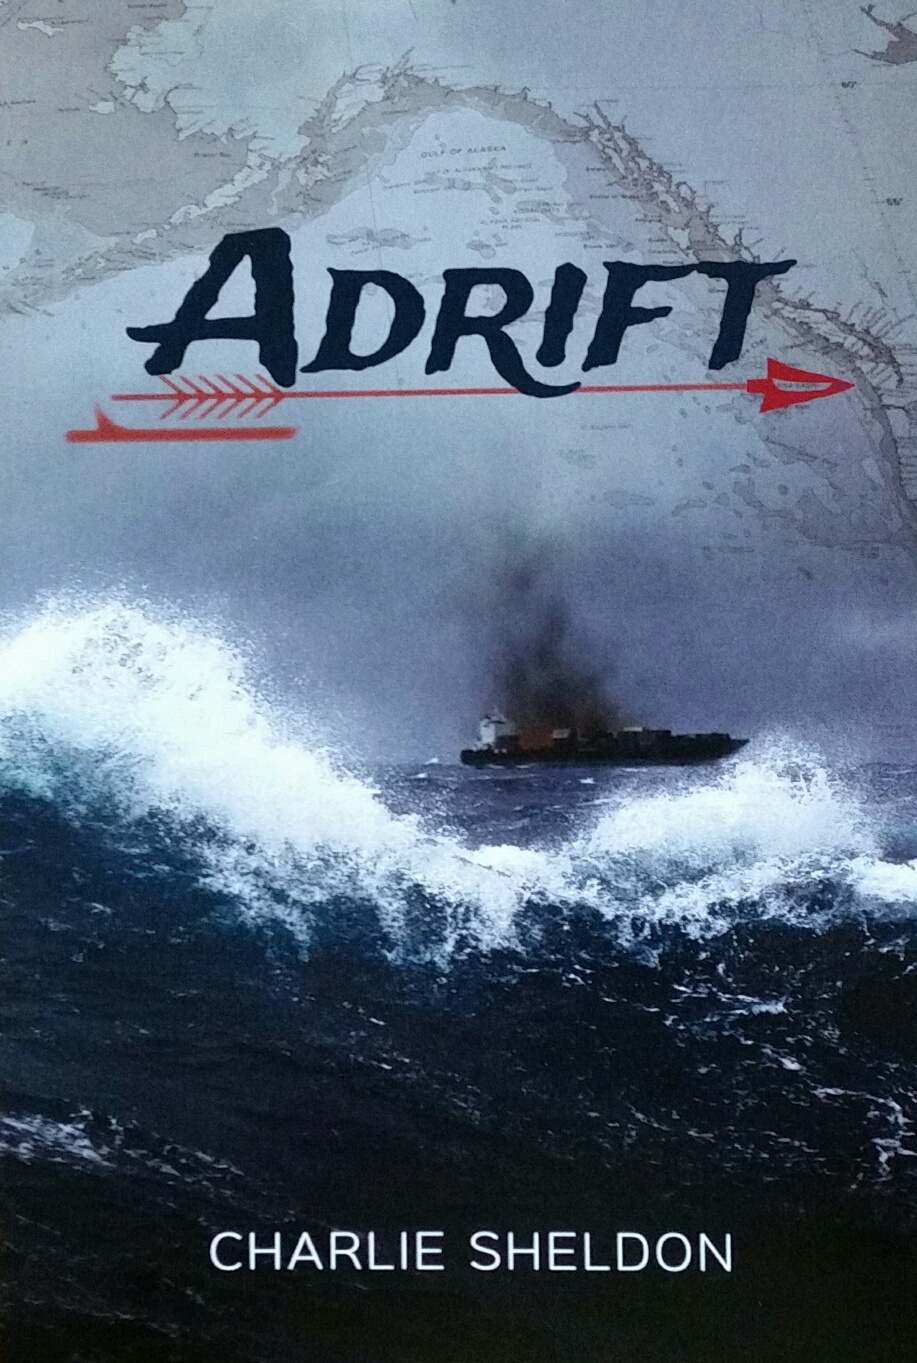 Adrift title 467k.jpg